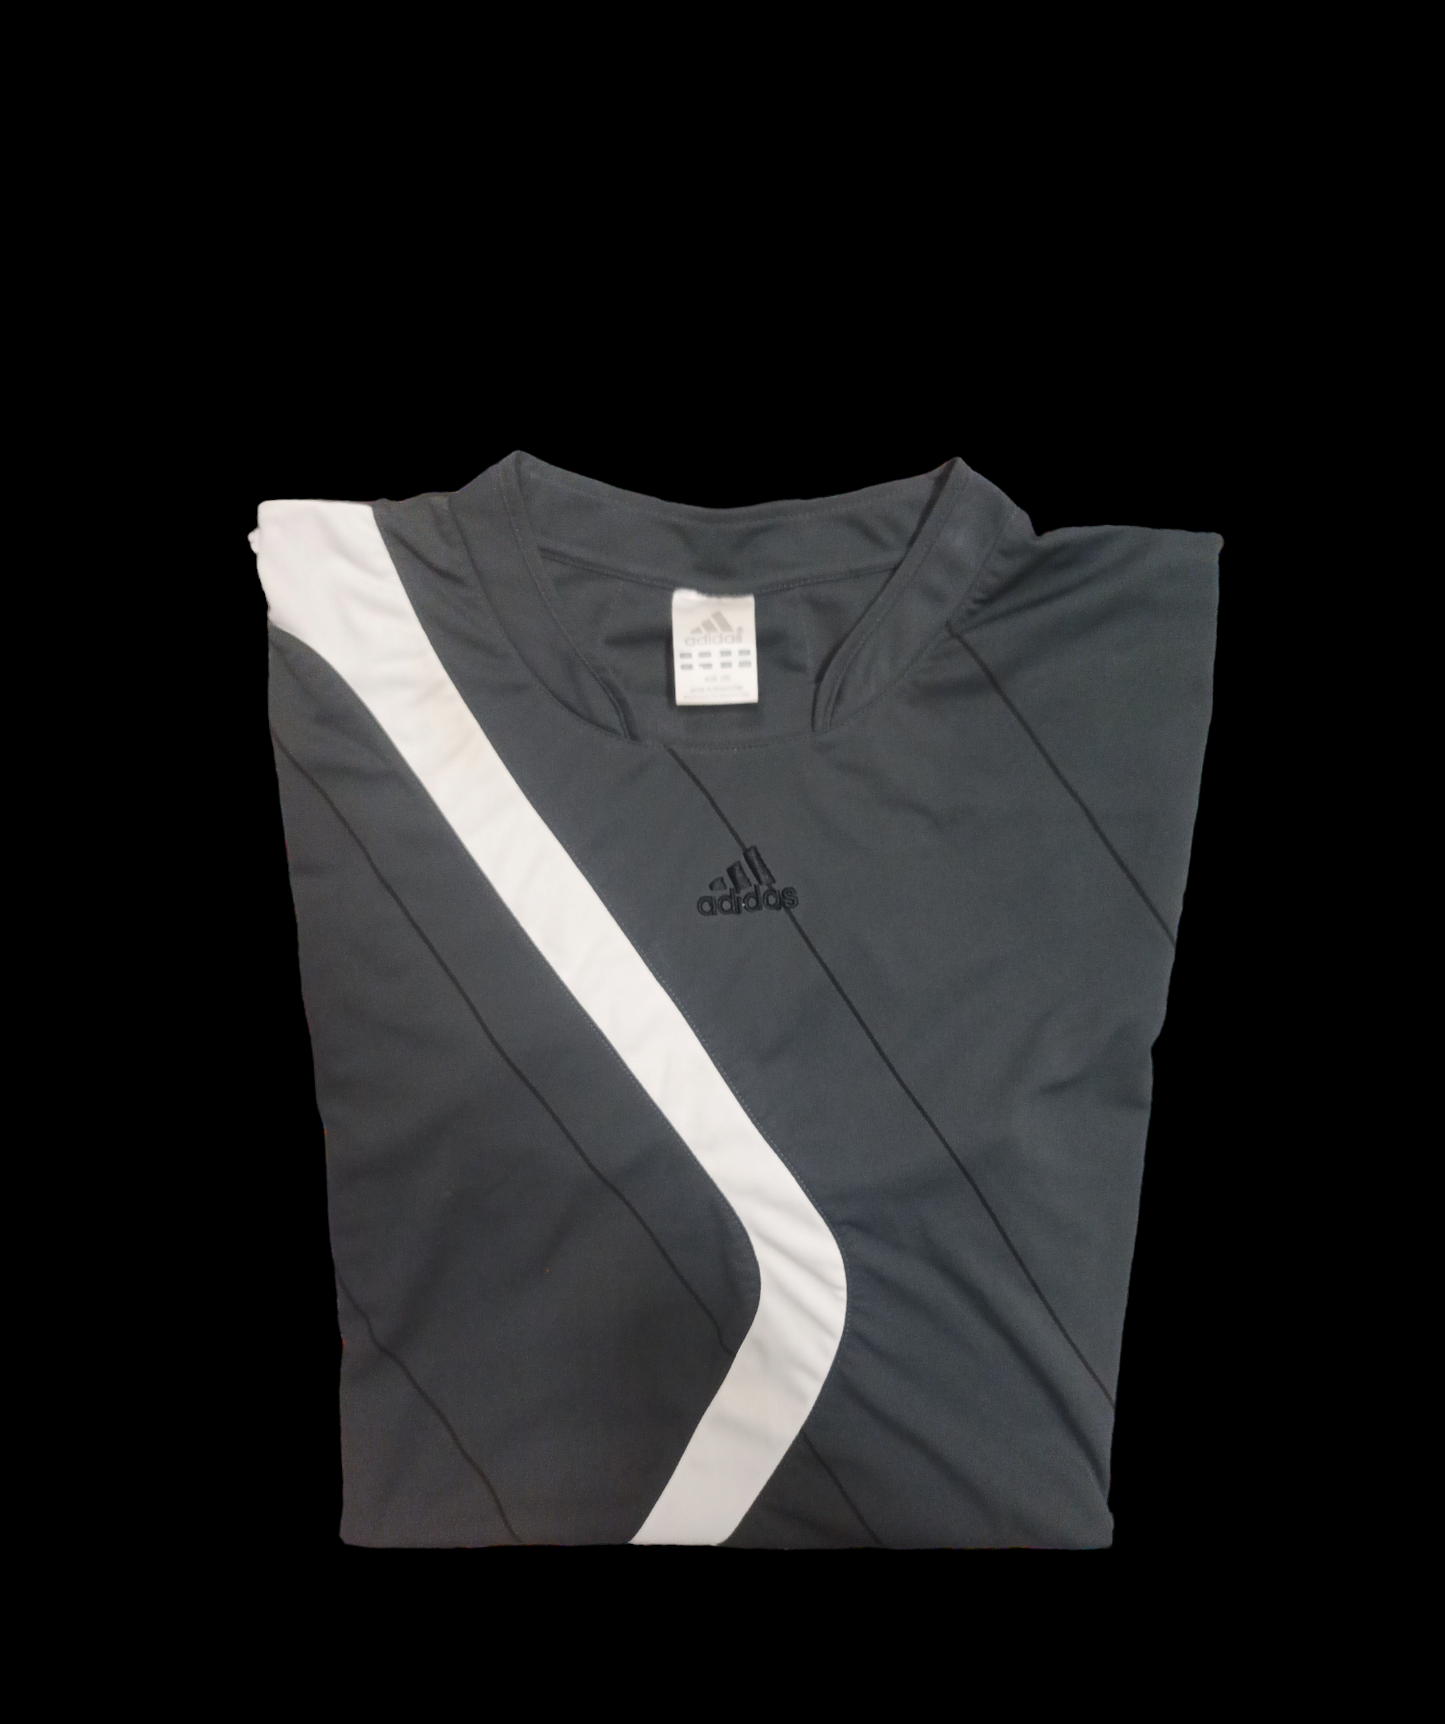 T-Shirt Adidas grigia e bianca